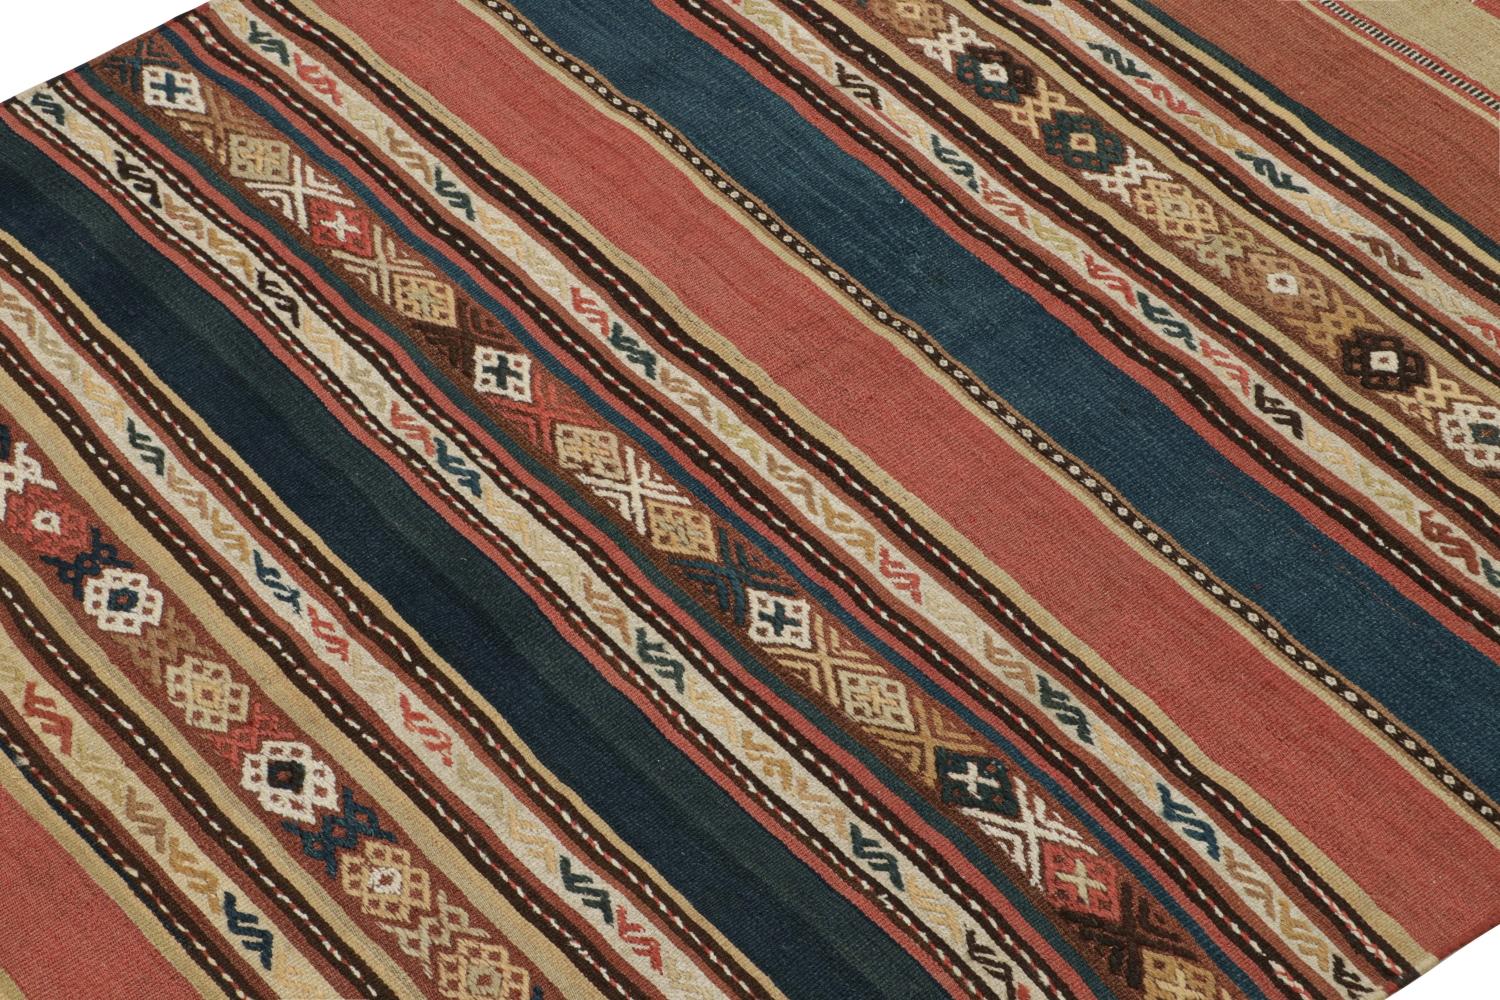 Ce Rug & Kilim persan vintage de 5x5 est un tapis tribal du milieu du siècle que nous pensons être originaire de la tribu Shahsavan. 

Sur le Design :

Tissé à la main en laine vers 1950-1960, son design bénéficie d'un jeu de rayures et de motifs